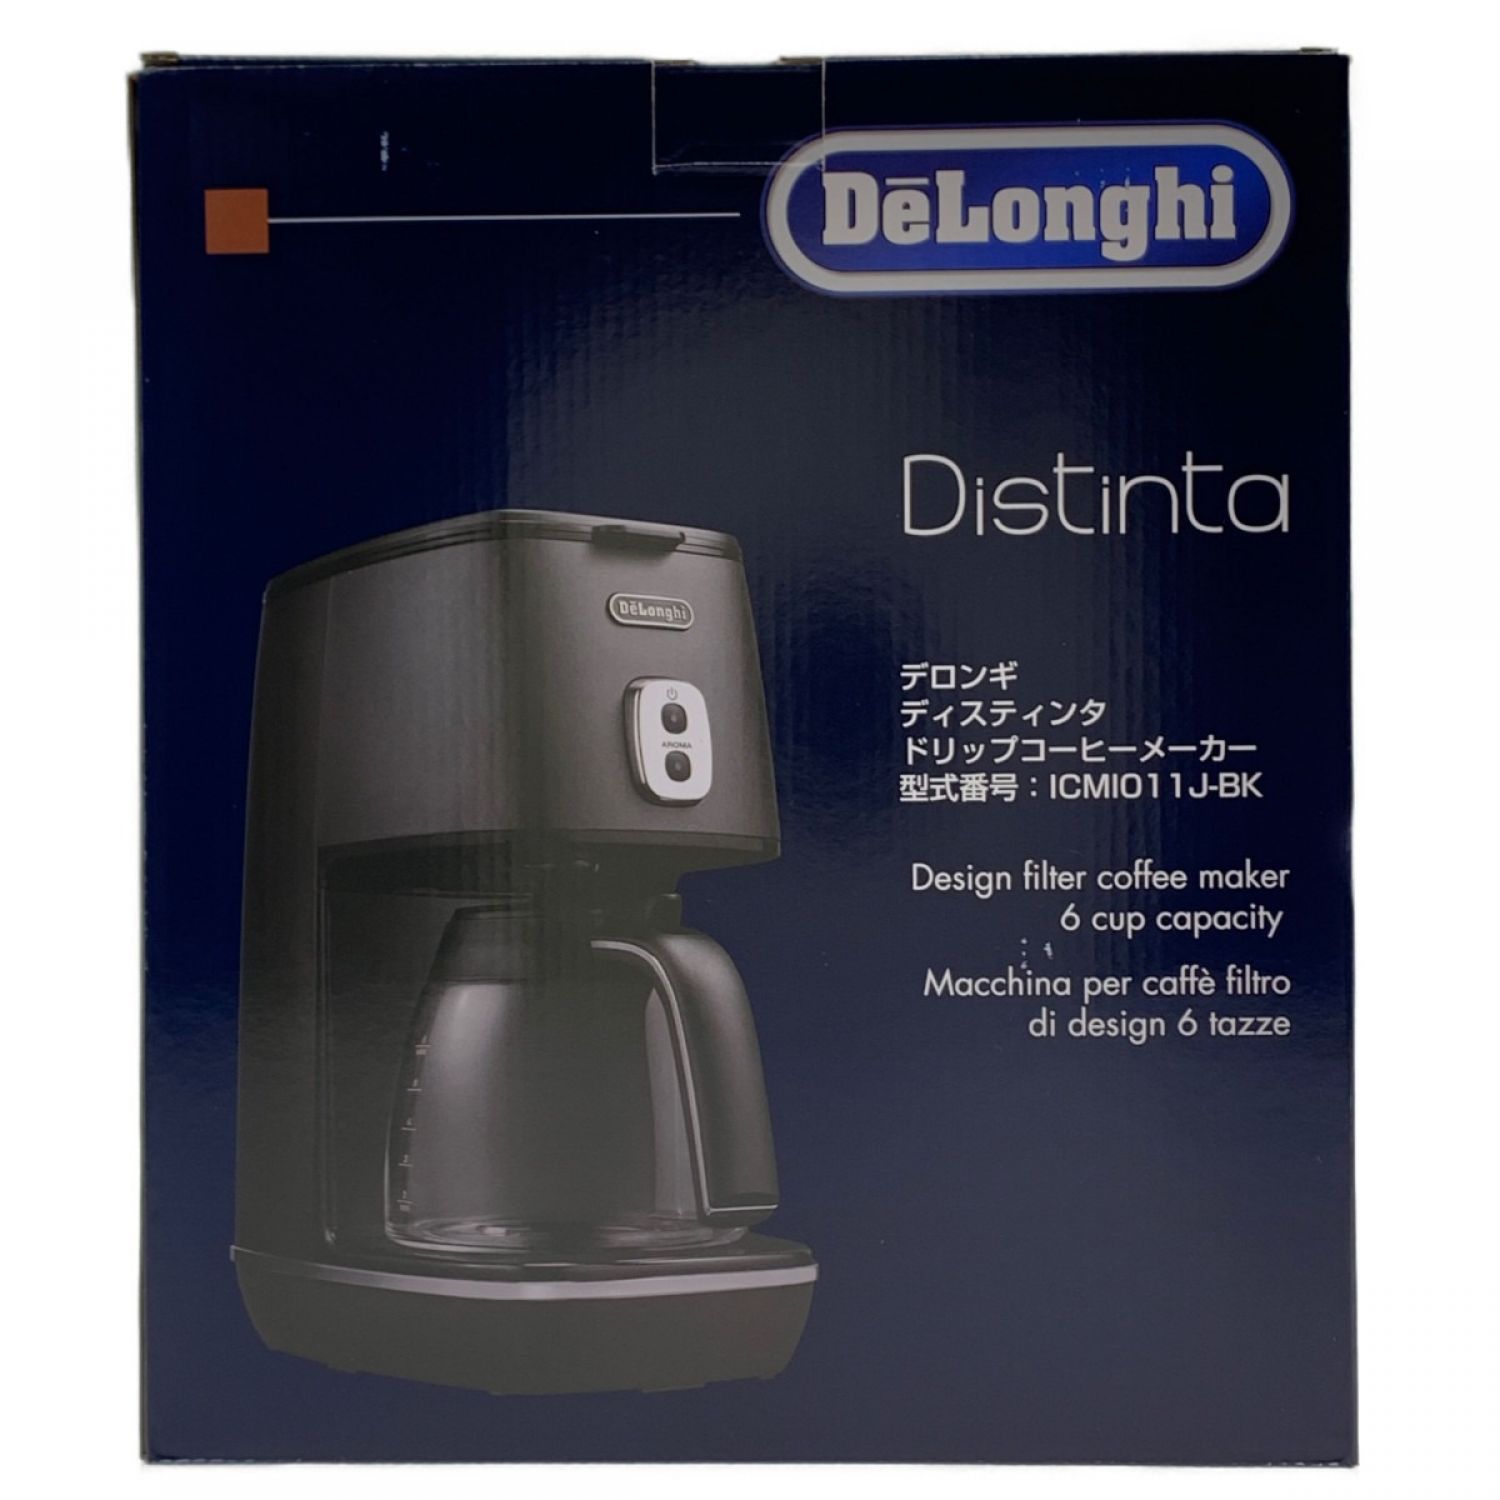 新品未使用DeLonghi ディスティンタコレクション ドリップコーヒーメーカー